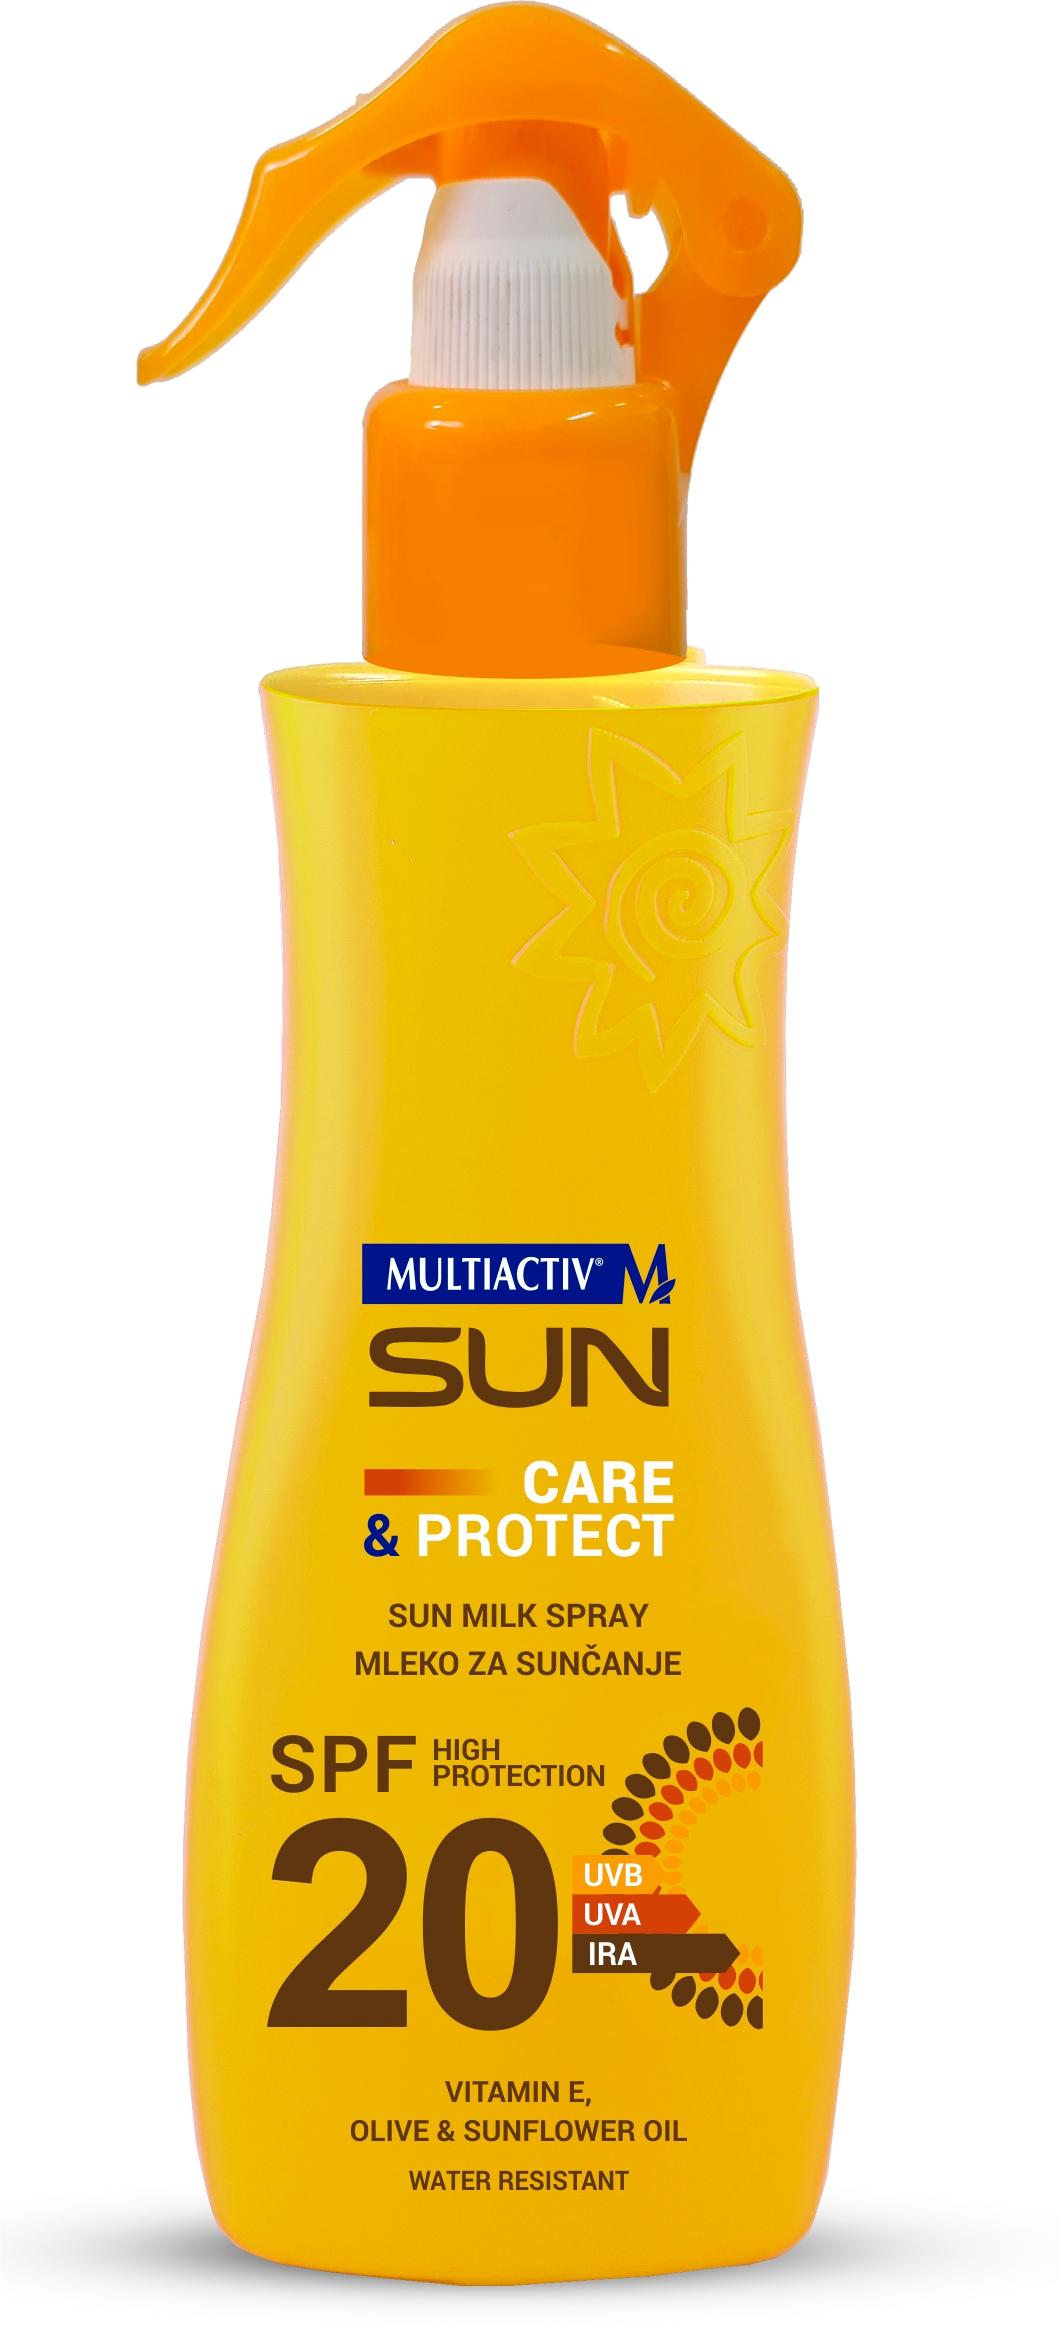 MULTIACTIV Mleko za sunčanje u spreju Sun Care&Protect SPF 20 200ml